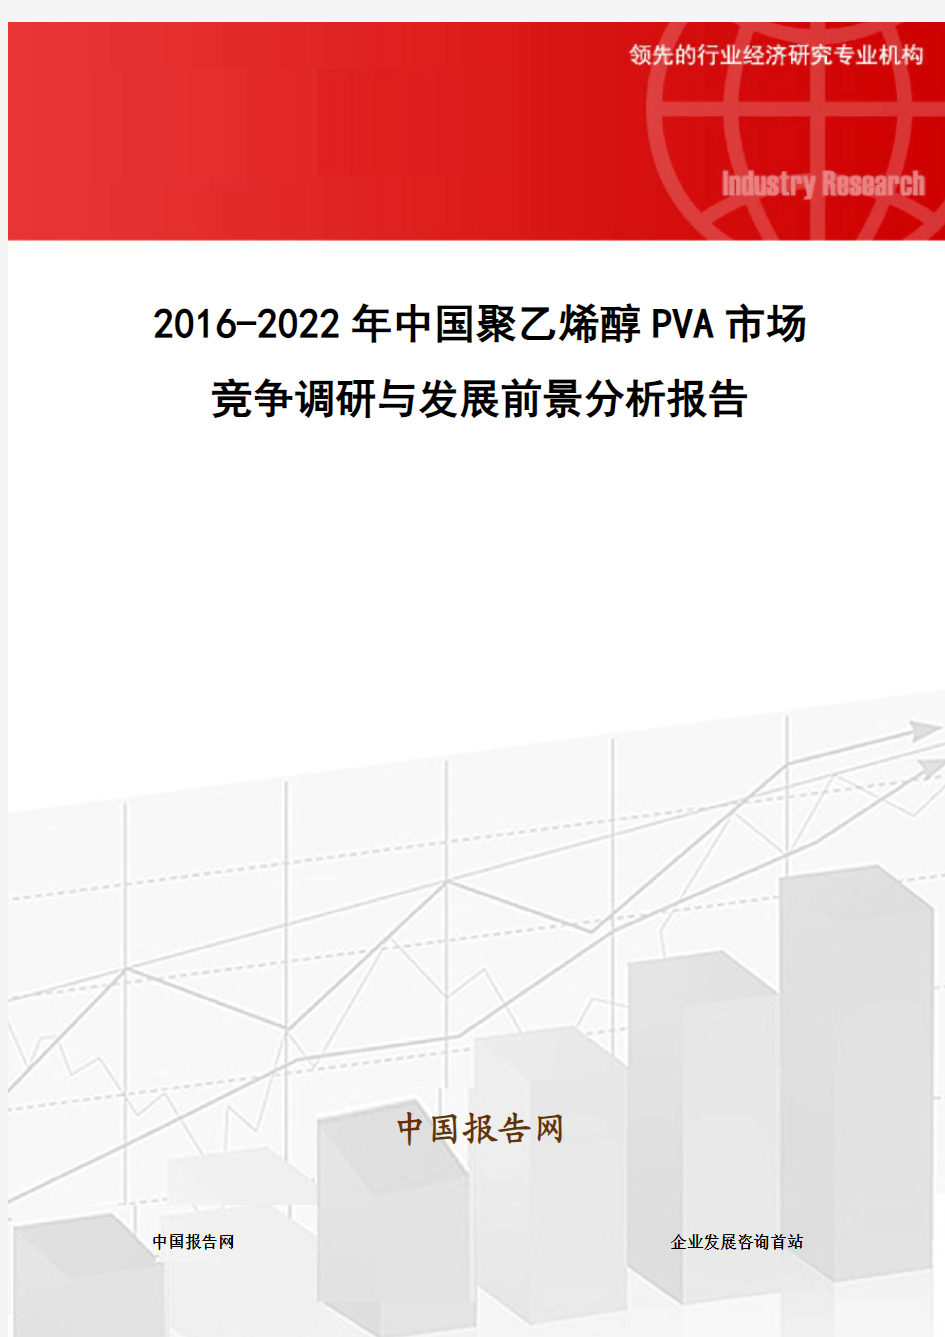 2016-2022年中国聚乙烯醇PVA市场竞争调研与发展前景分析报告